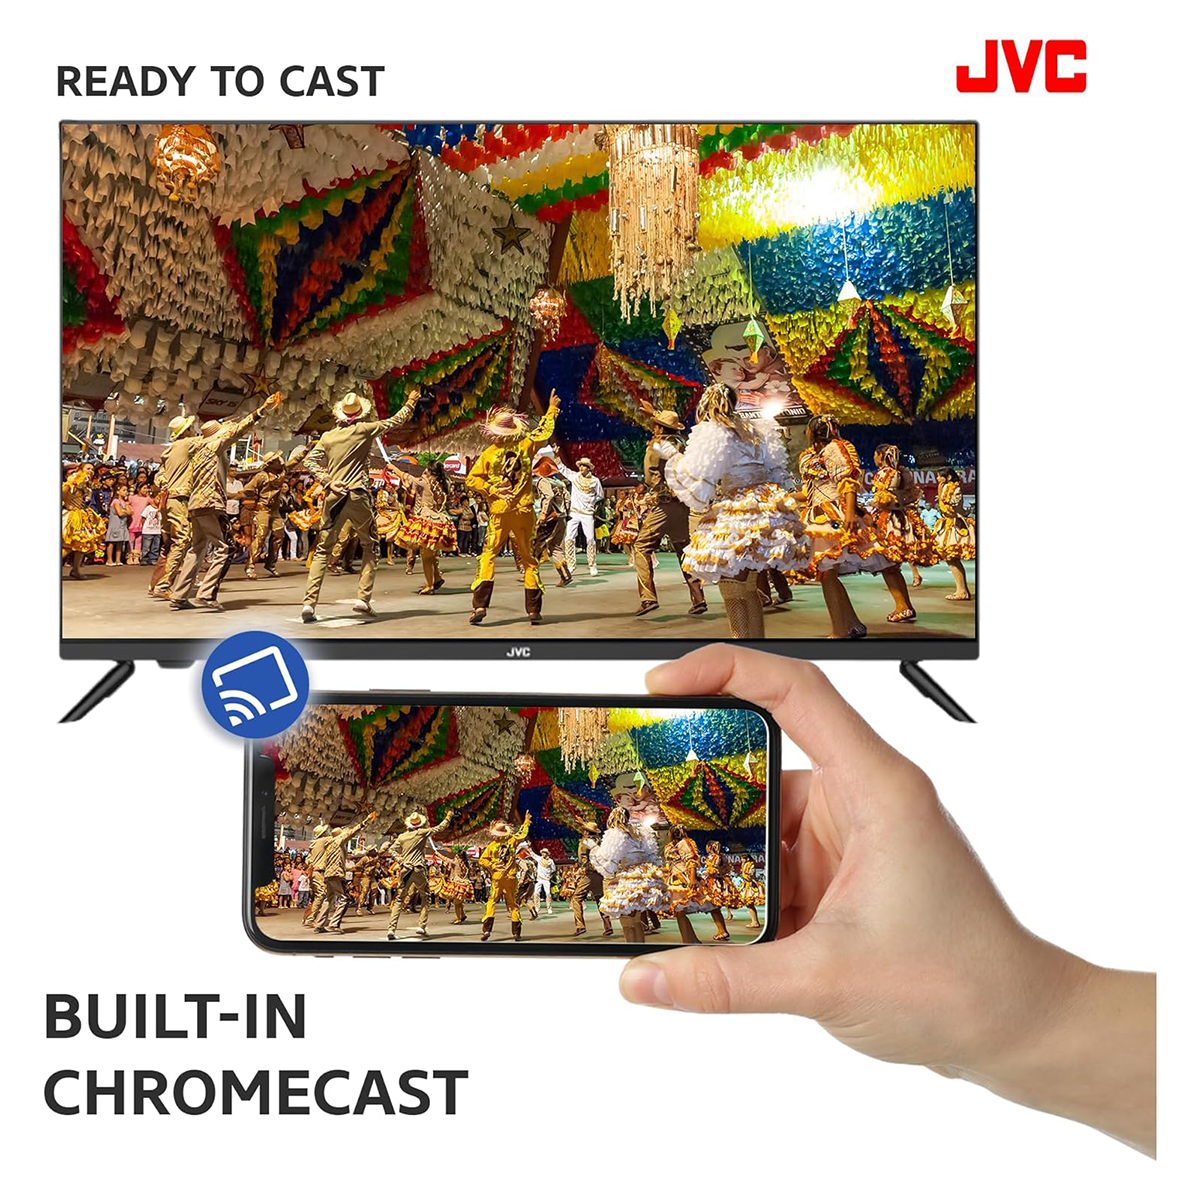 JVC 32 inch Smart TV Full HD Android TV LED Display  AV-H323115A14